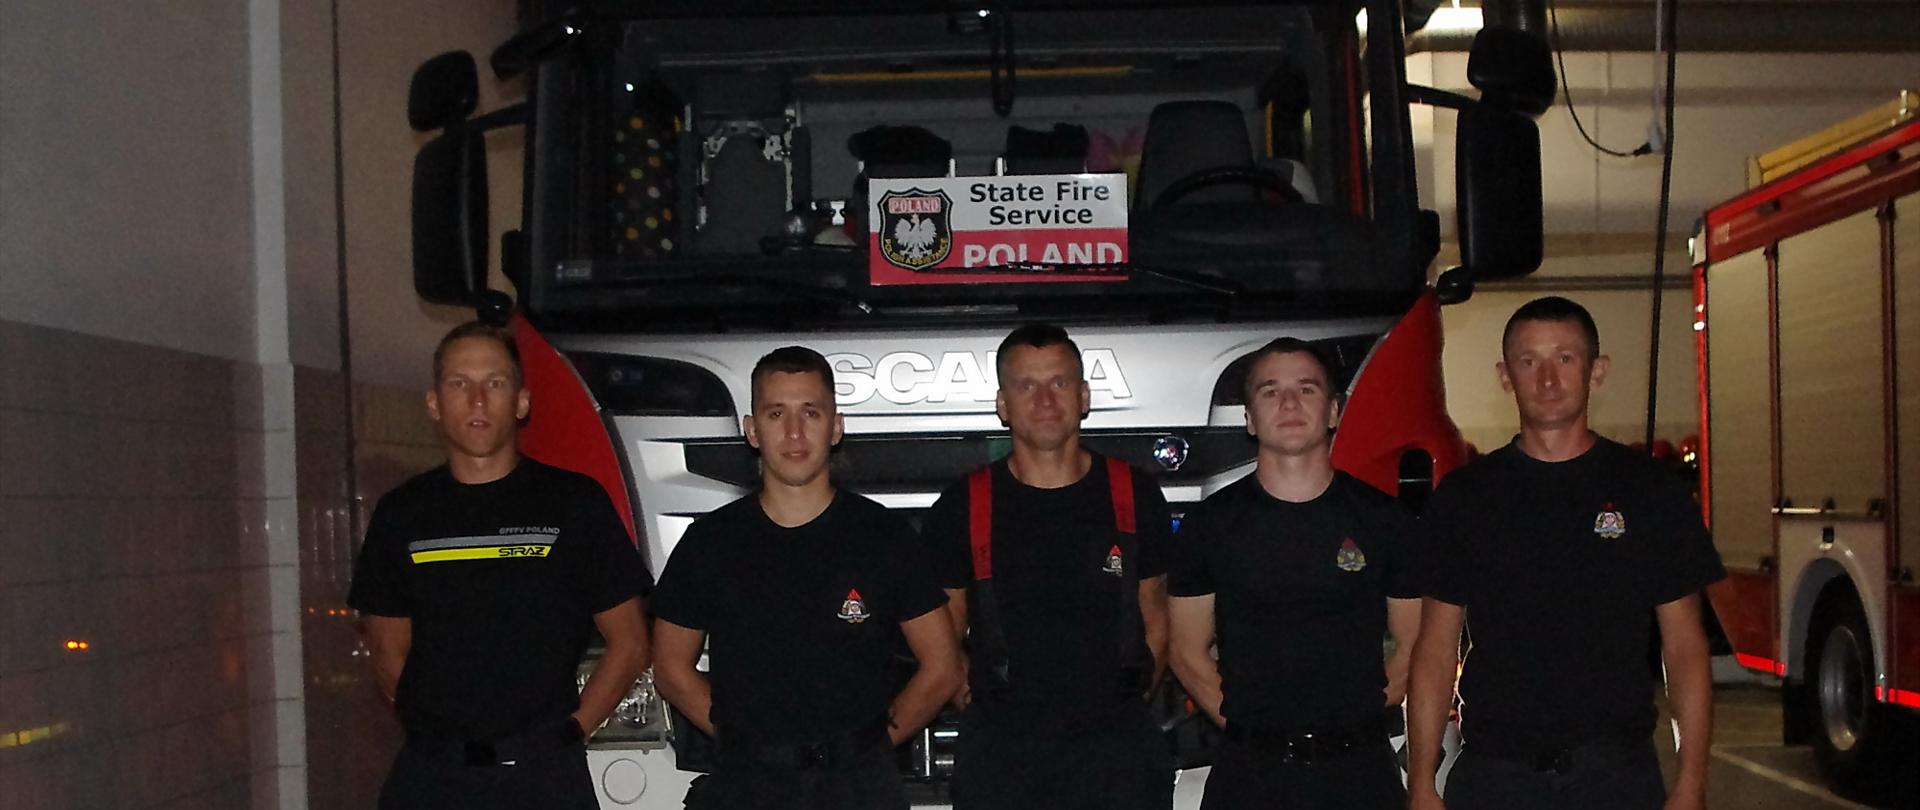 Pięciu strażaków ubranych w mundury koszarowe stoi przed przedem ciężakiego samochodu gaśniczego, za którego szybą jest widoczna tabliczka z napisem state fire service Poland